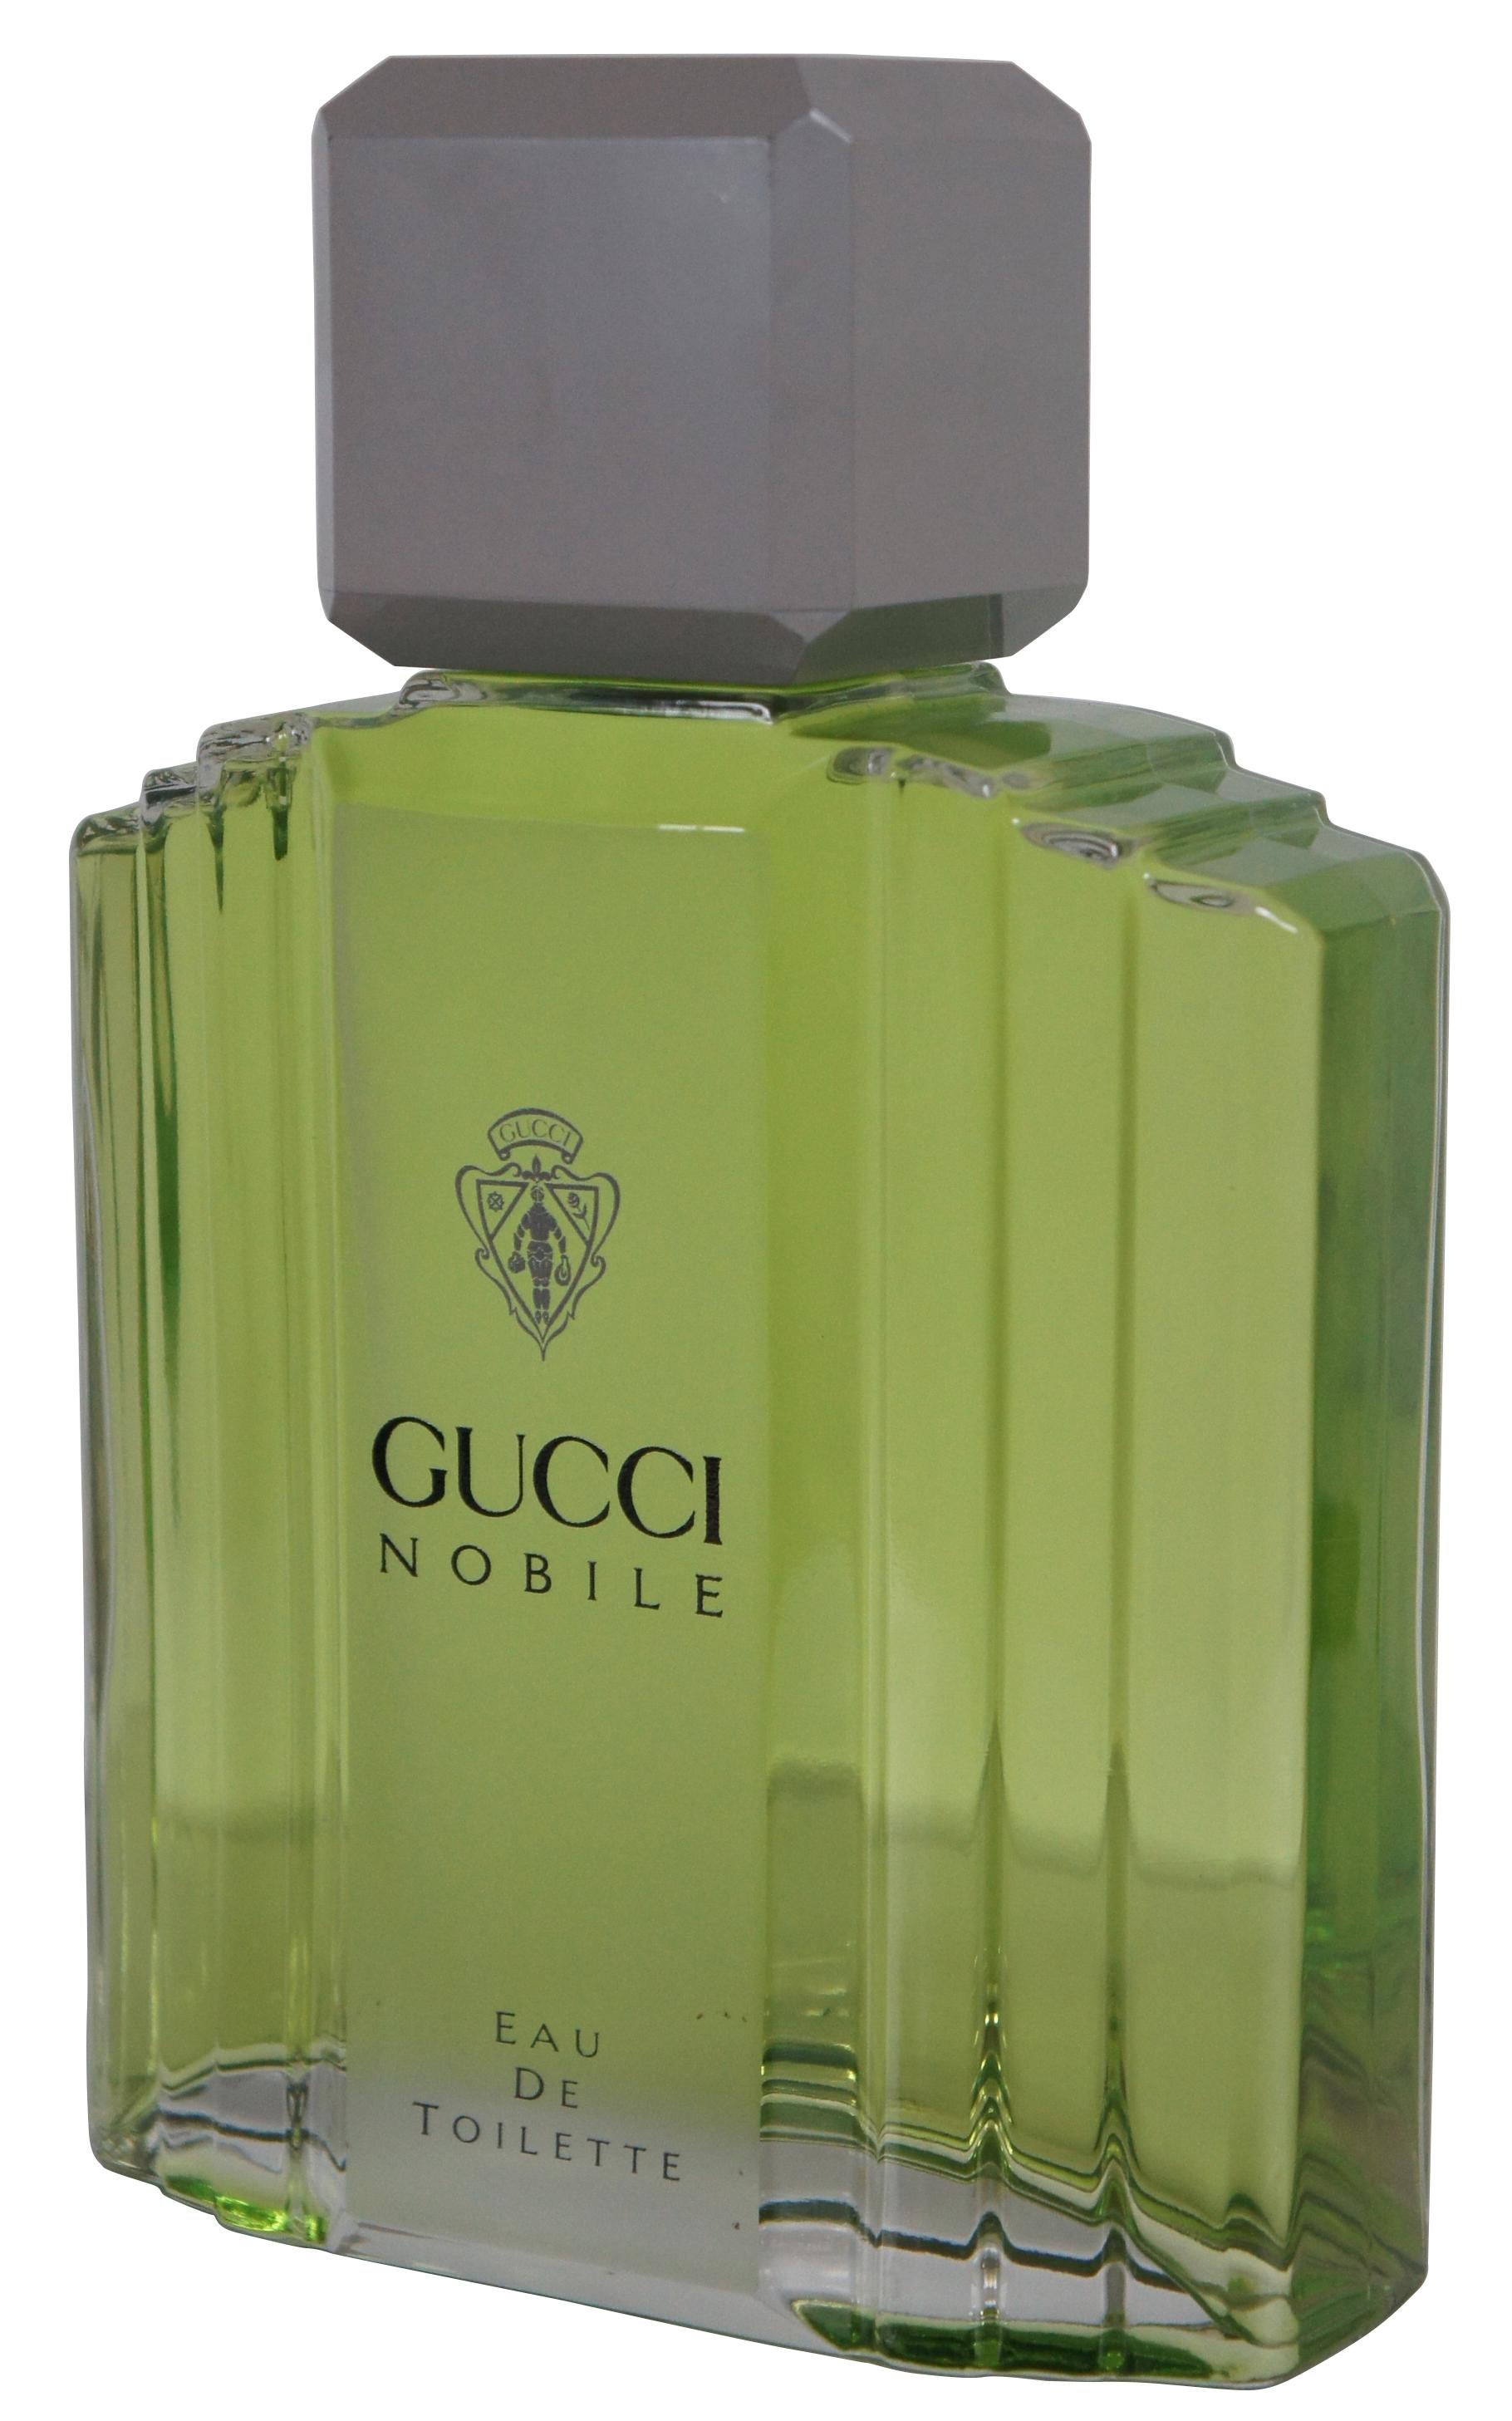 Vintage Gucci Nobile eu de toilette Designerduft factice oder dummy Flasche mit eleganten Art-Deco-Styling, ursprünglich Teil eines Kaufhaus Display. Maße: 11